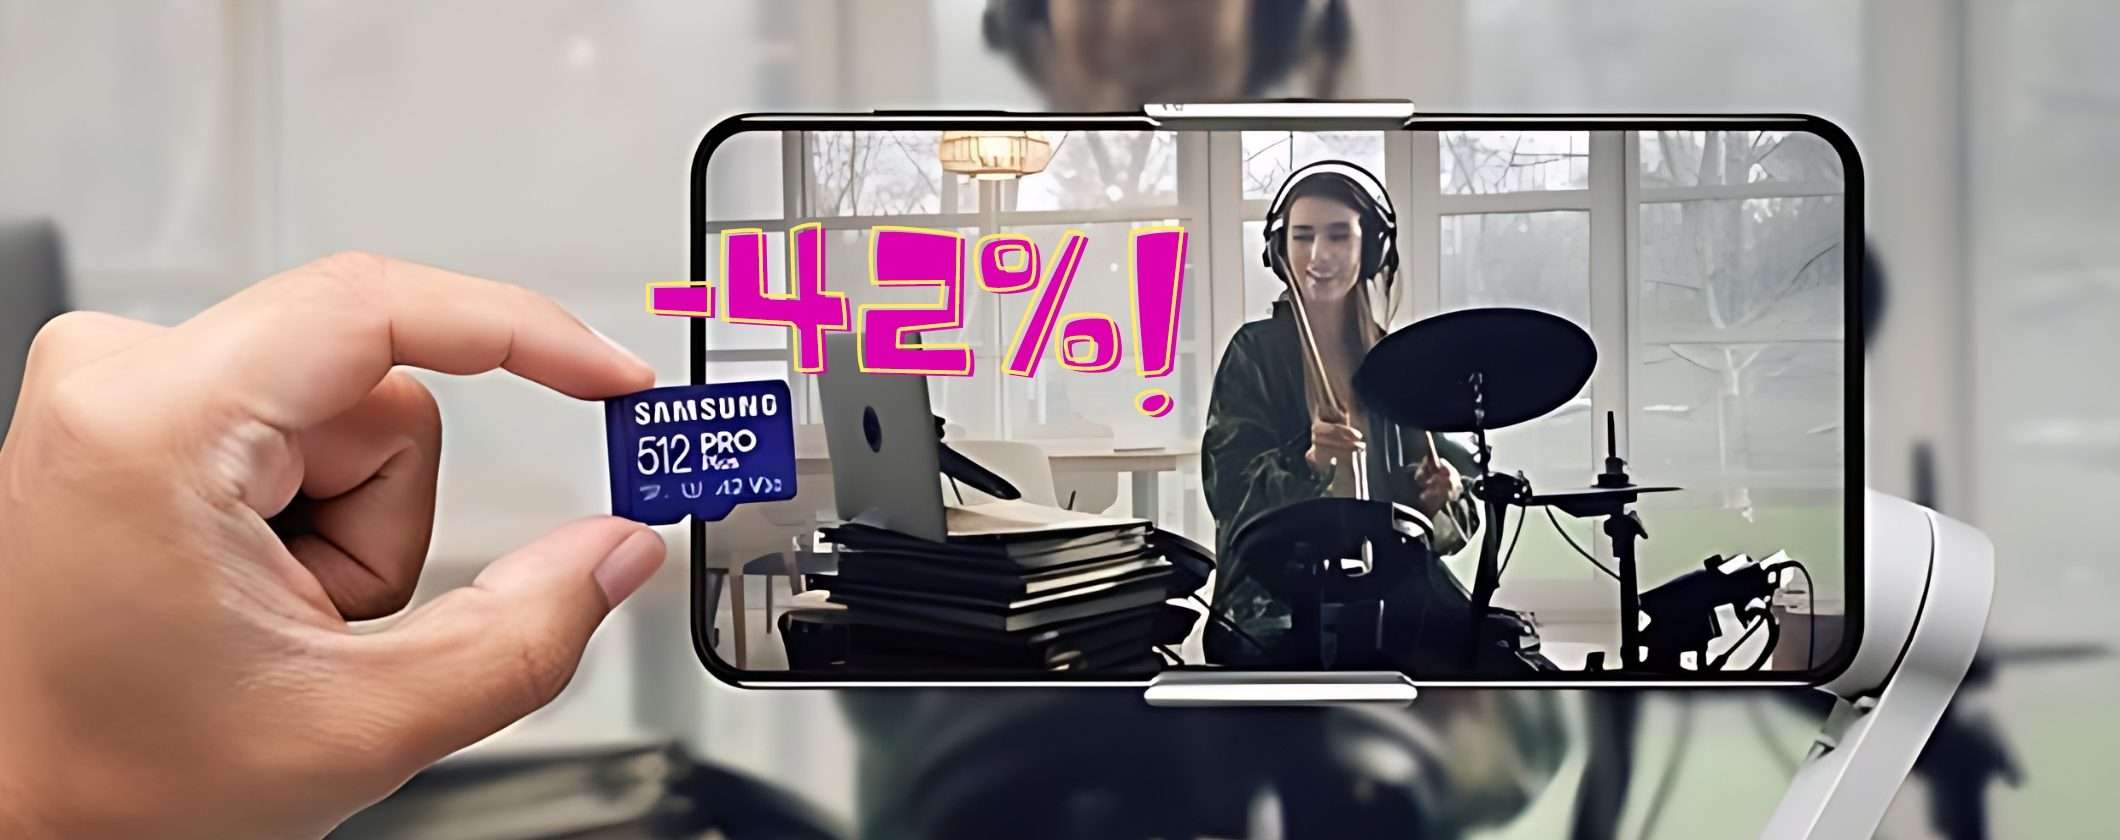 MicroSD Samsung da 256GB: INCREDIBILE SCONTO del 42%